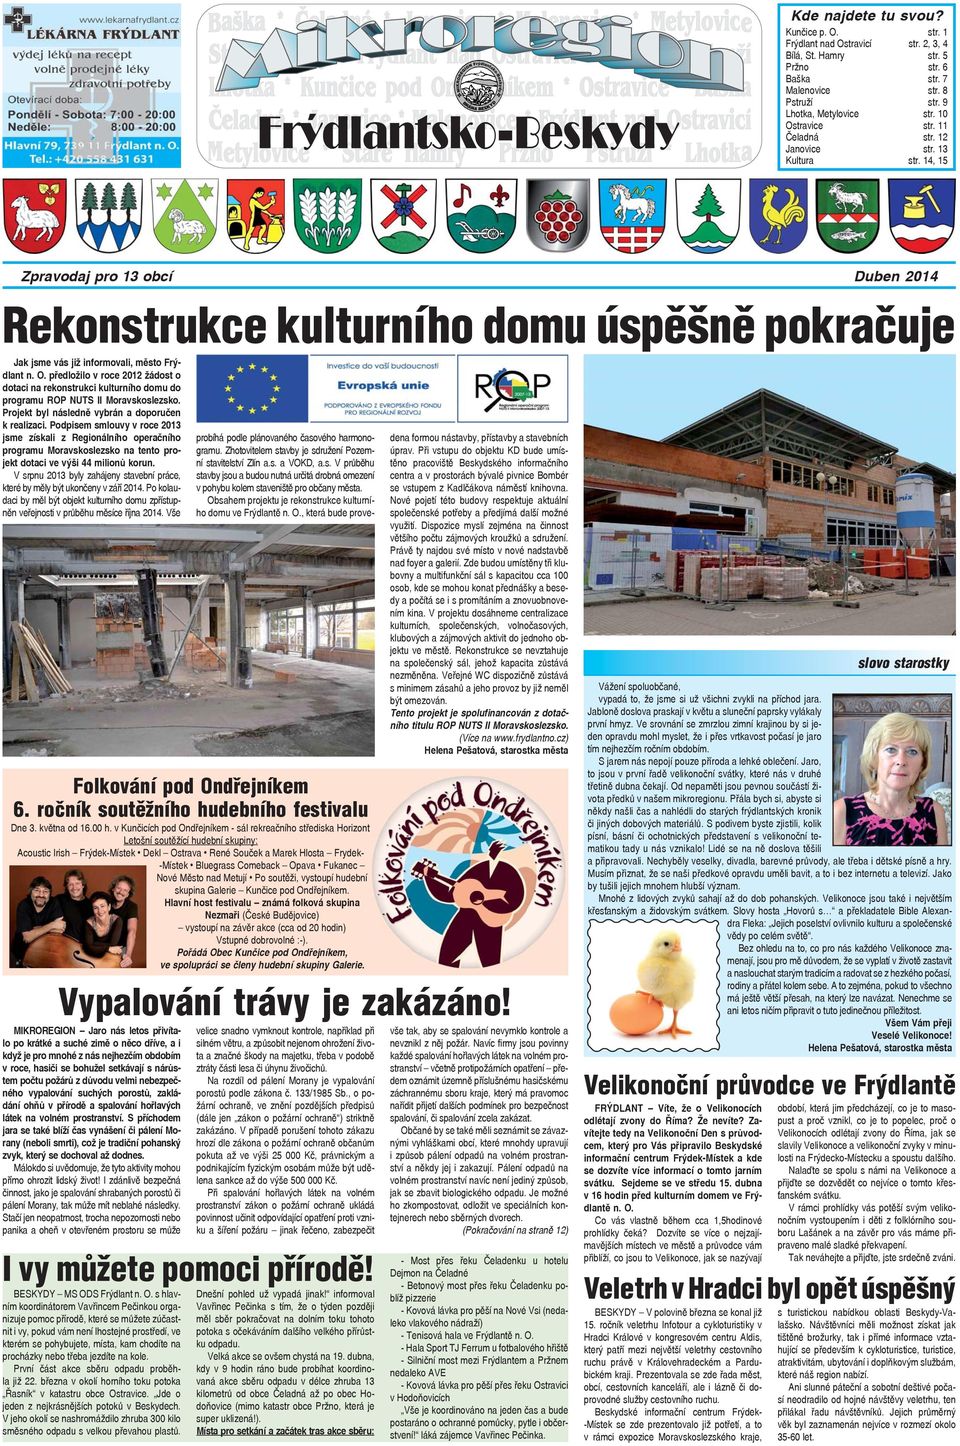 předložilo v roce 2012 žádost o dotaci na rekonstrukci kulturního domu do programu ROP NUTS II Moravskoslezsko. Projekt byl následně vybrán a doporučen k realizaci.